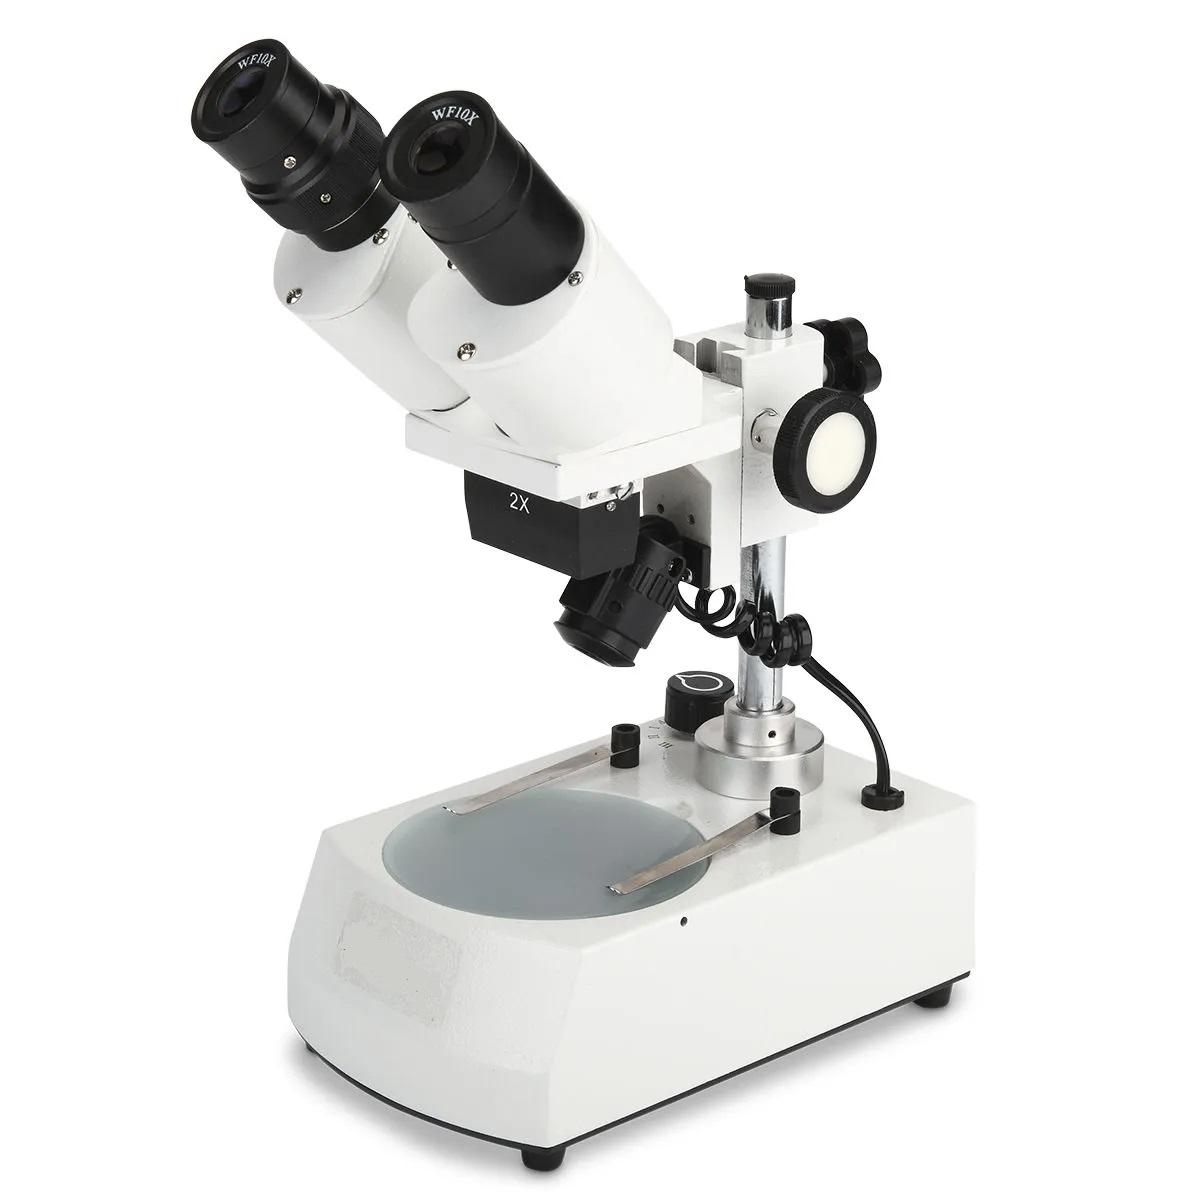 Economy Stereo Microscope Top and Bottom LED Illumination